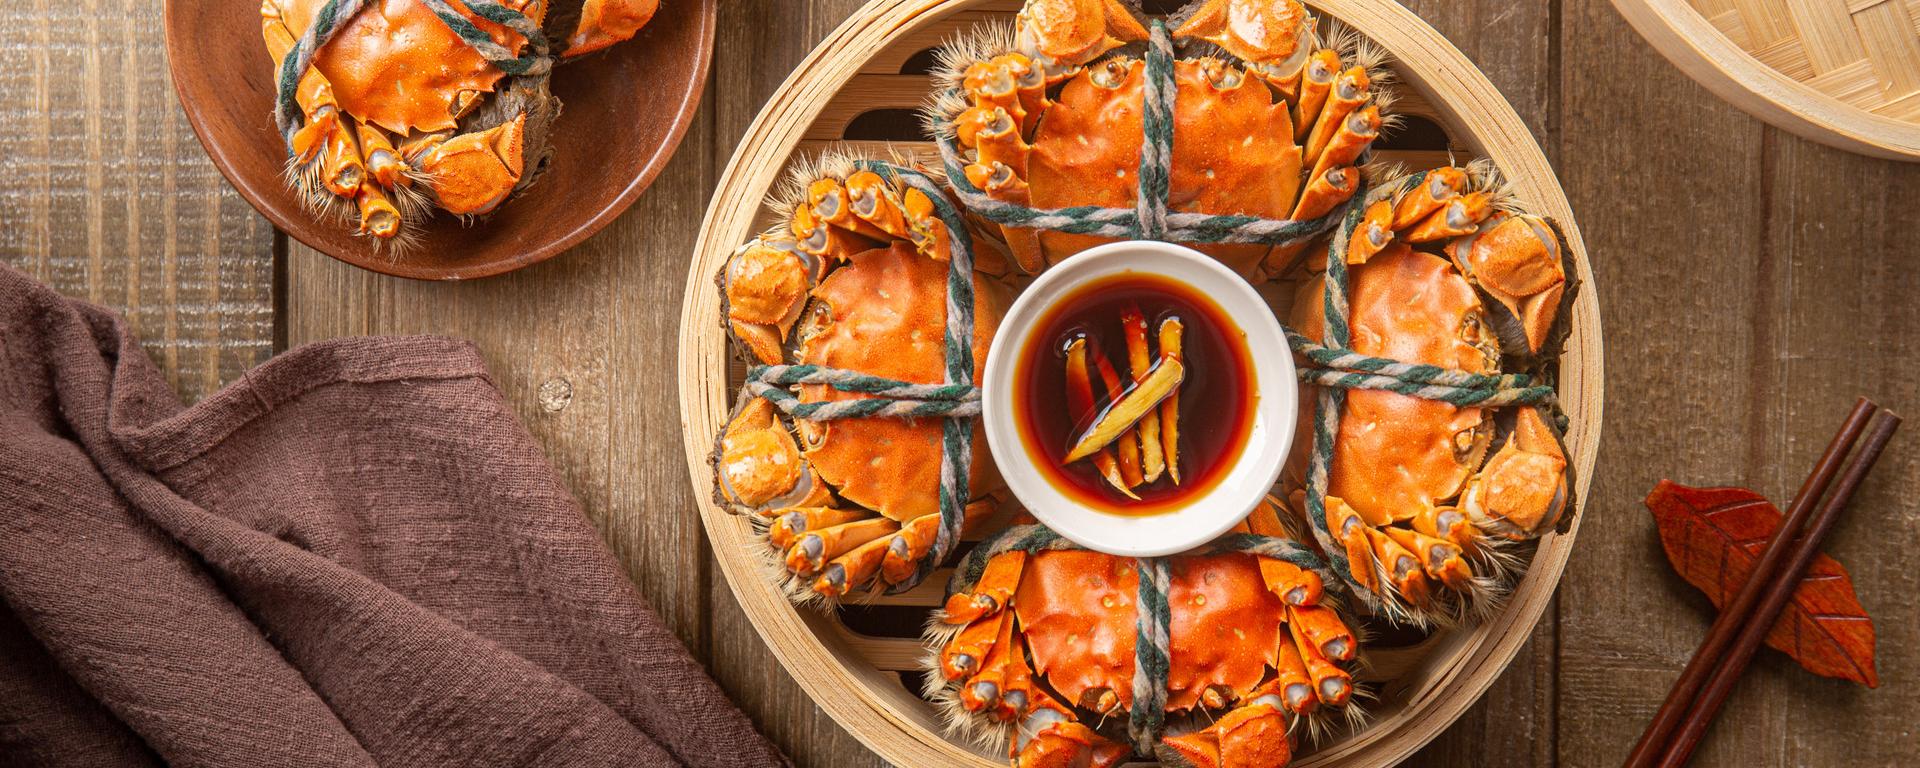 螃蟹和柿子一起吃会怎样 螃蟹和柿子一起吃真的会中毒吗